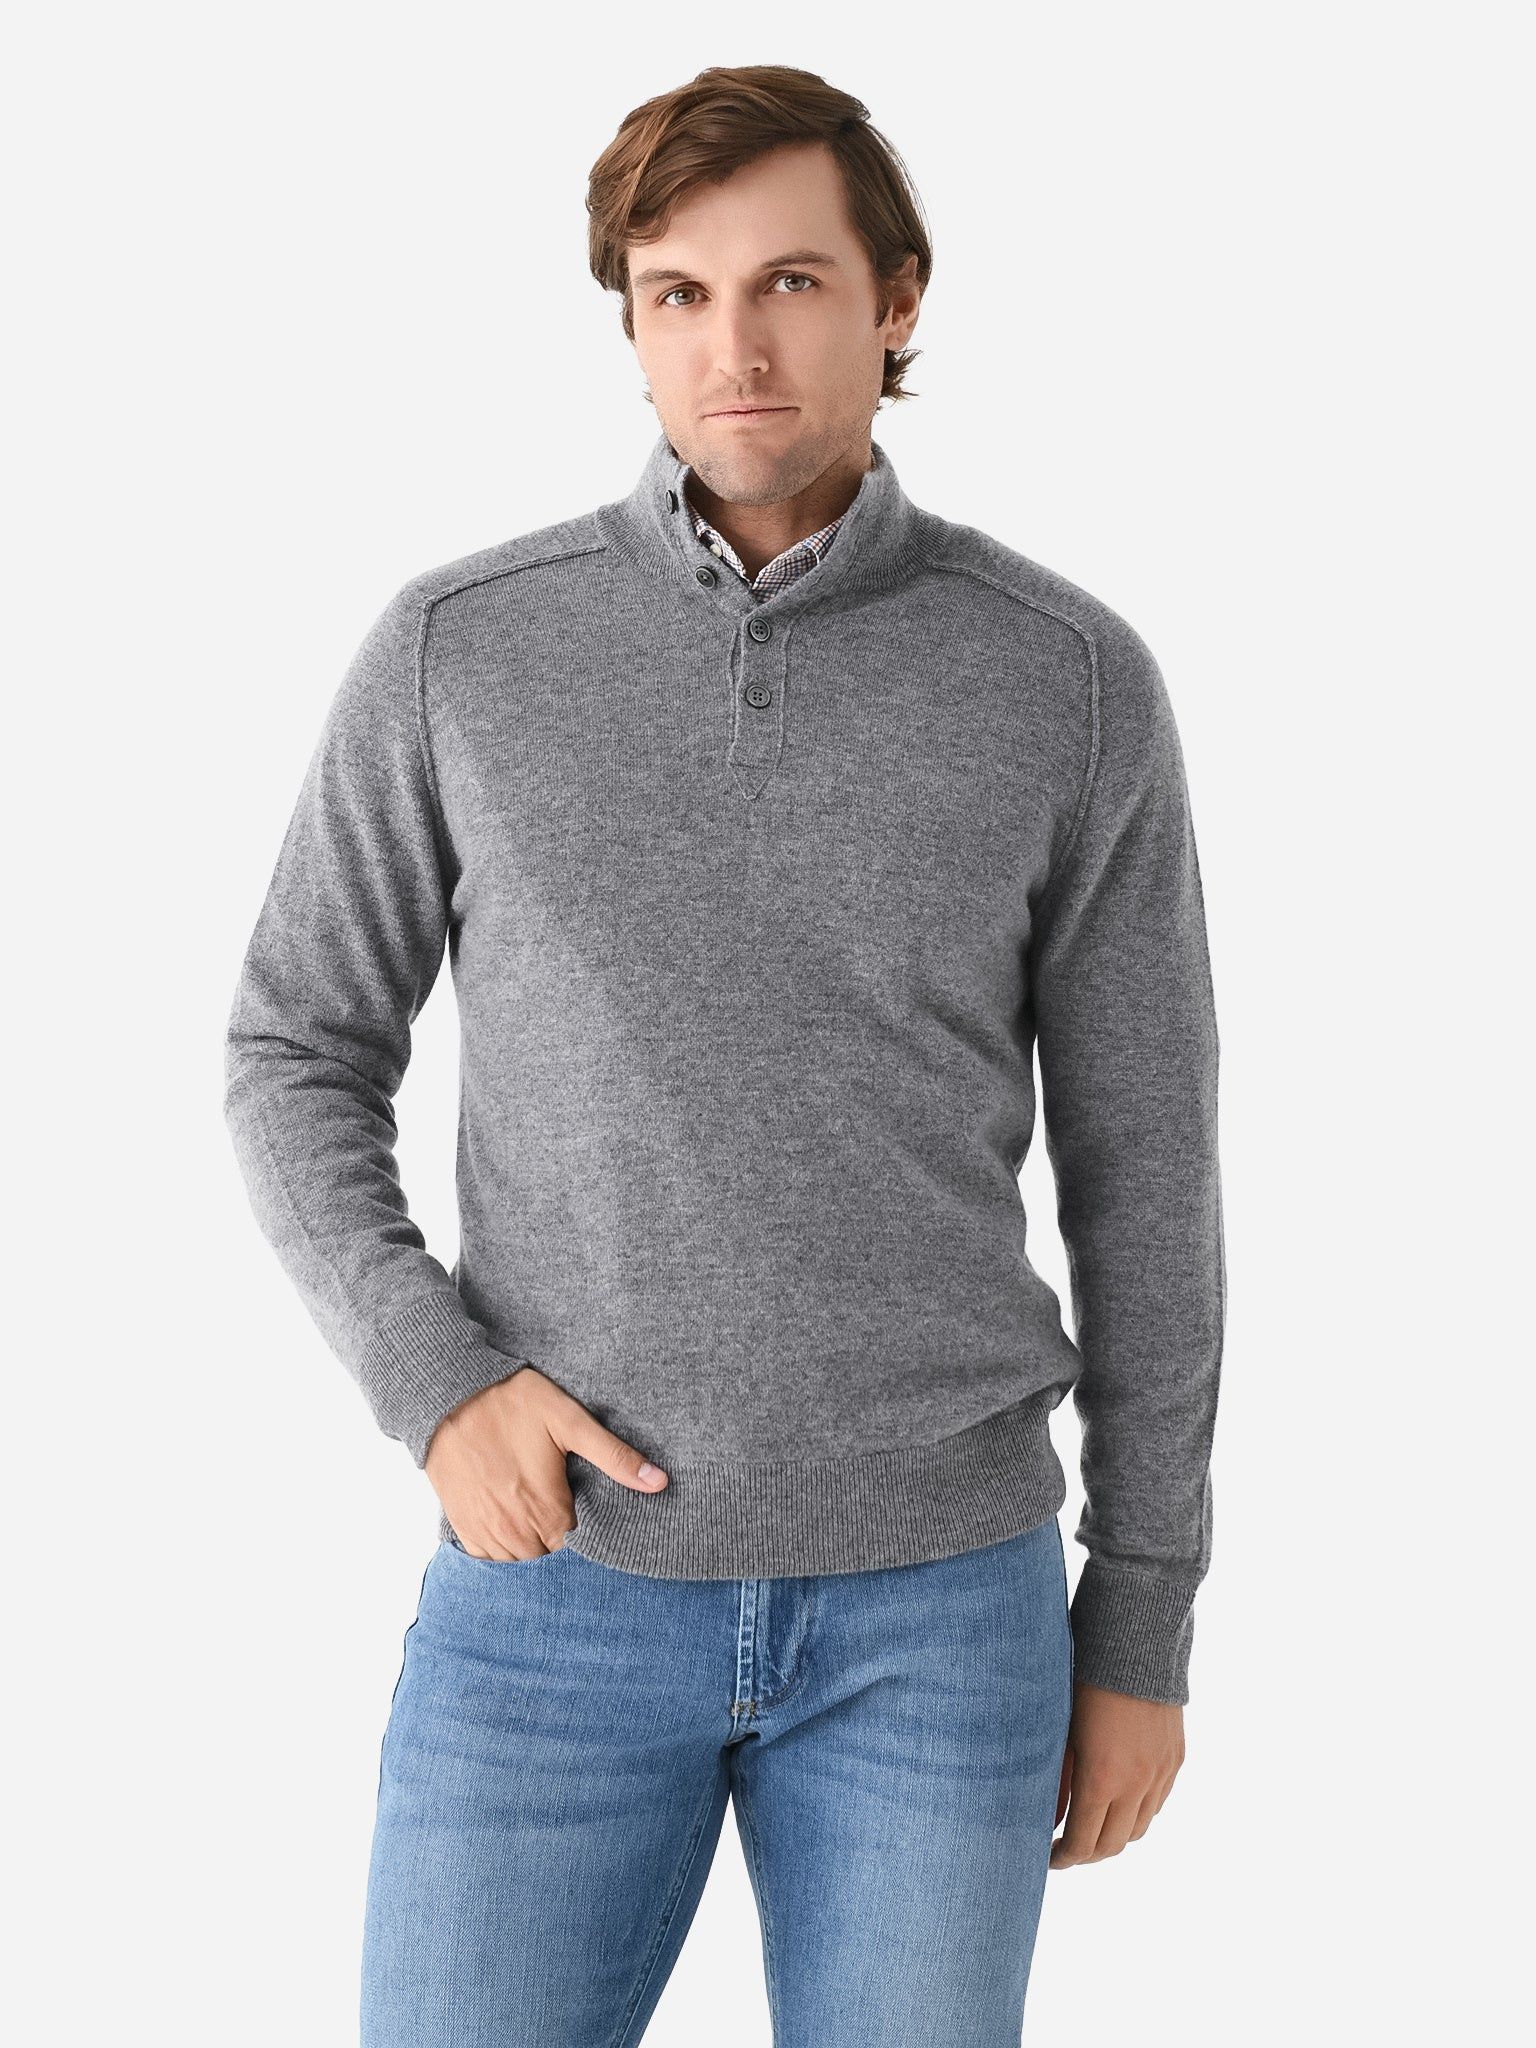 HARTFORD
                      
                     Men's High Neck Pullover | Saint Bernard